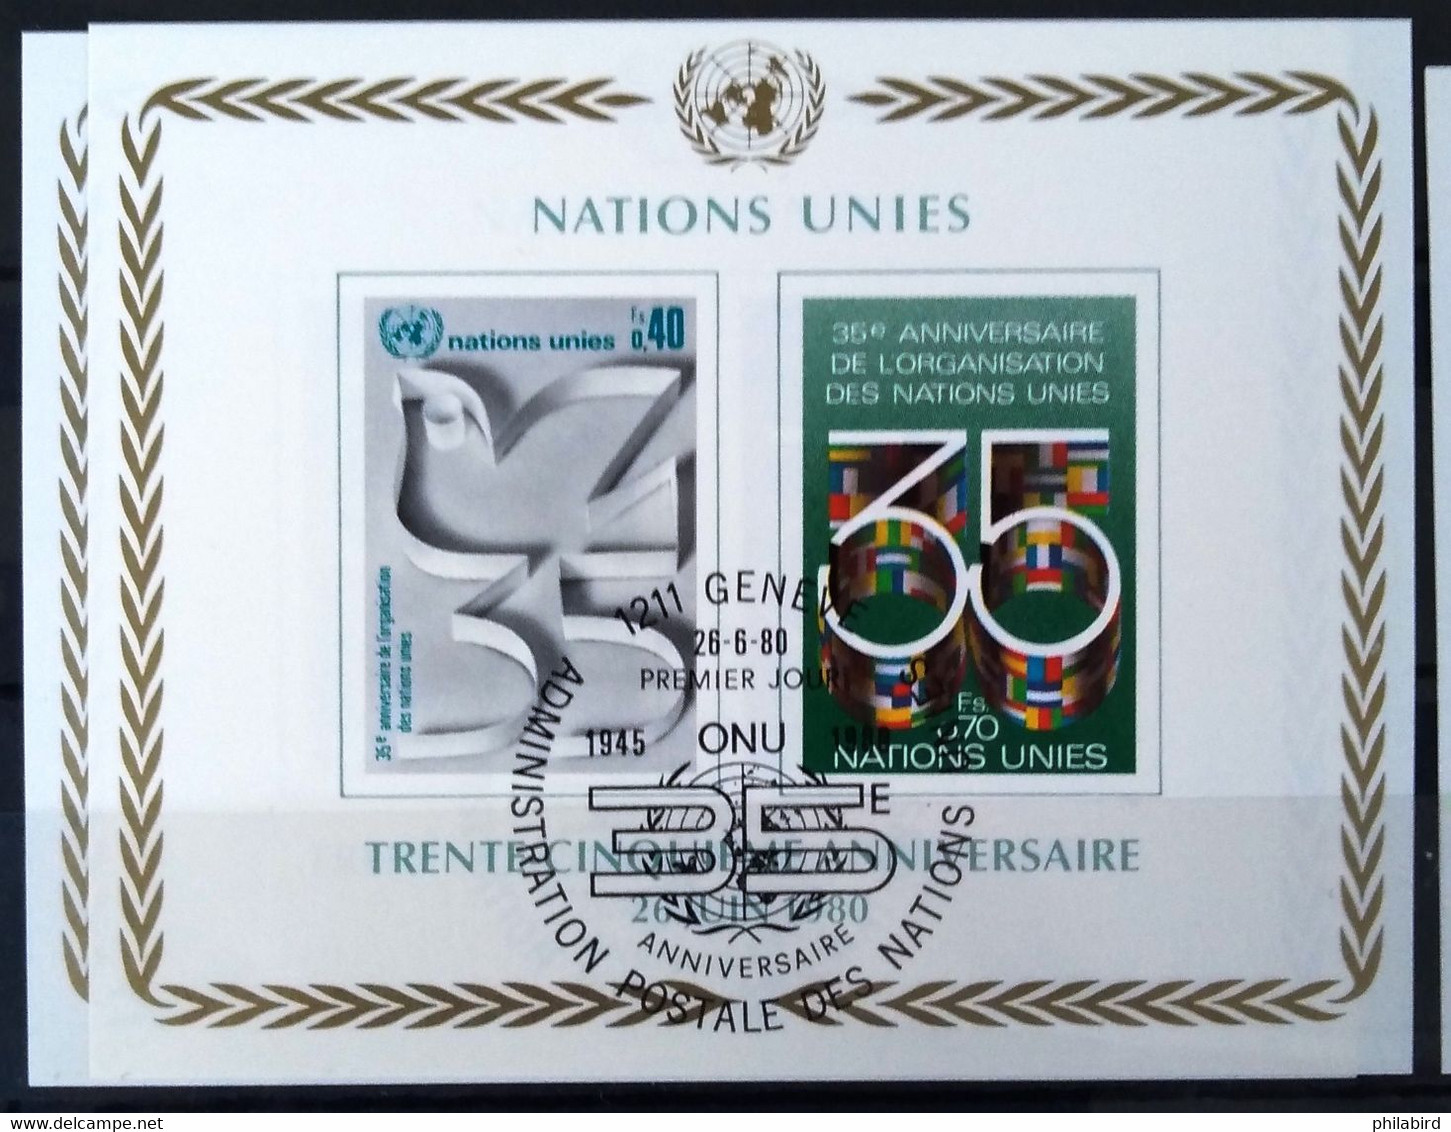 NATIONS-UNIS - GENEVE                  B.F 2                     1° JOUR               26/06/80 - Blocs-feuillets